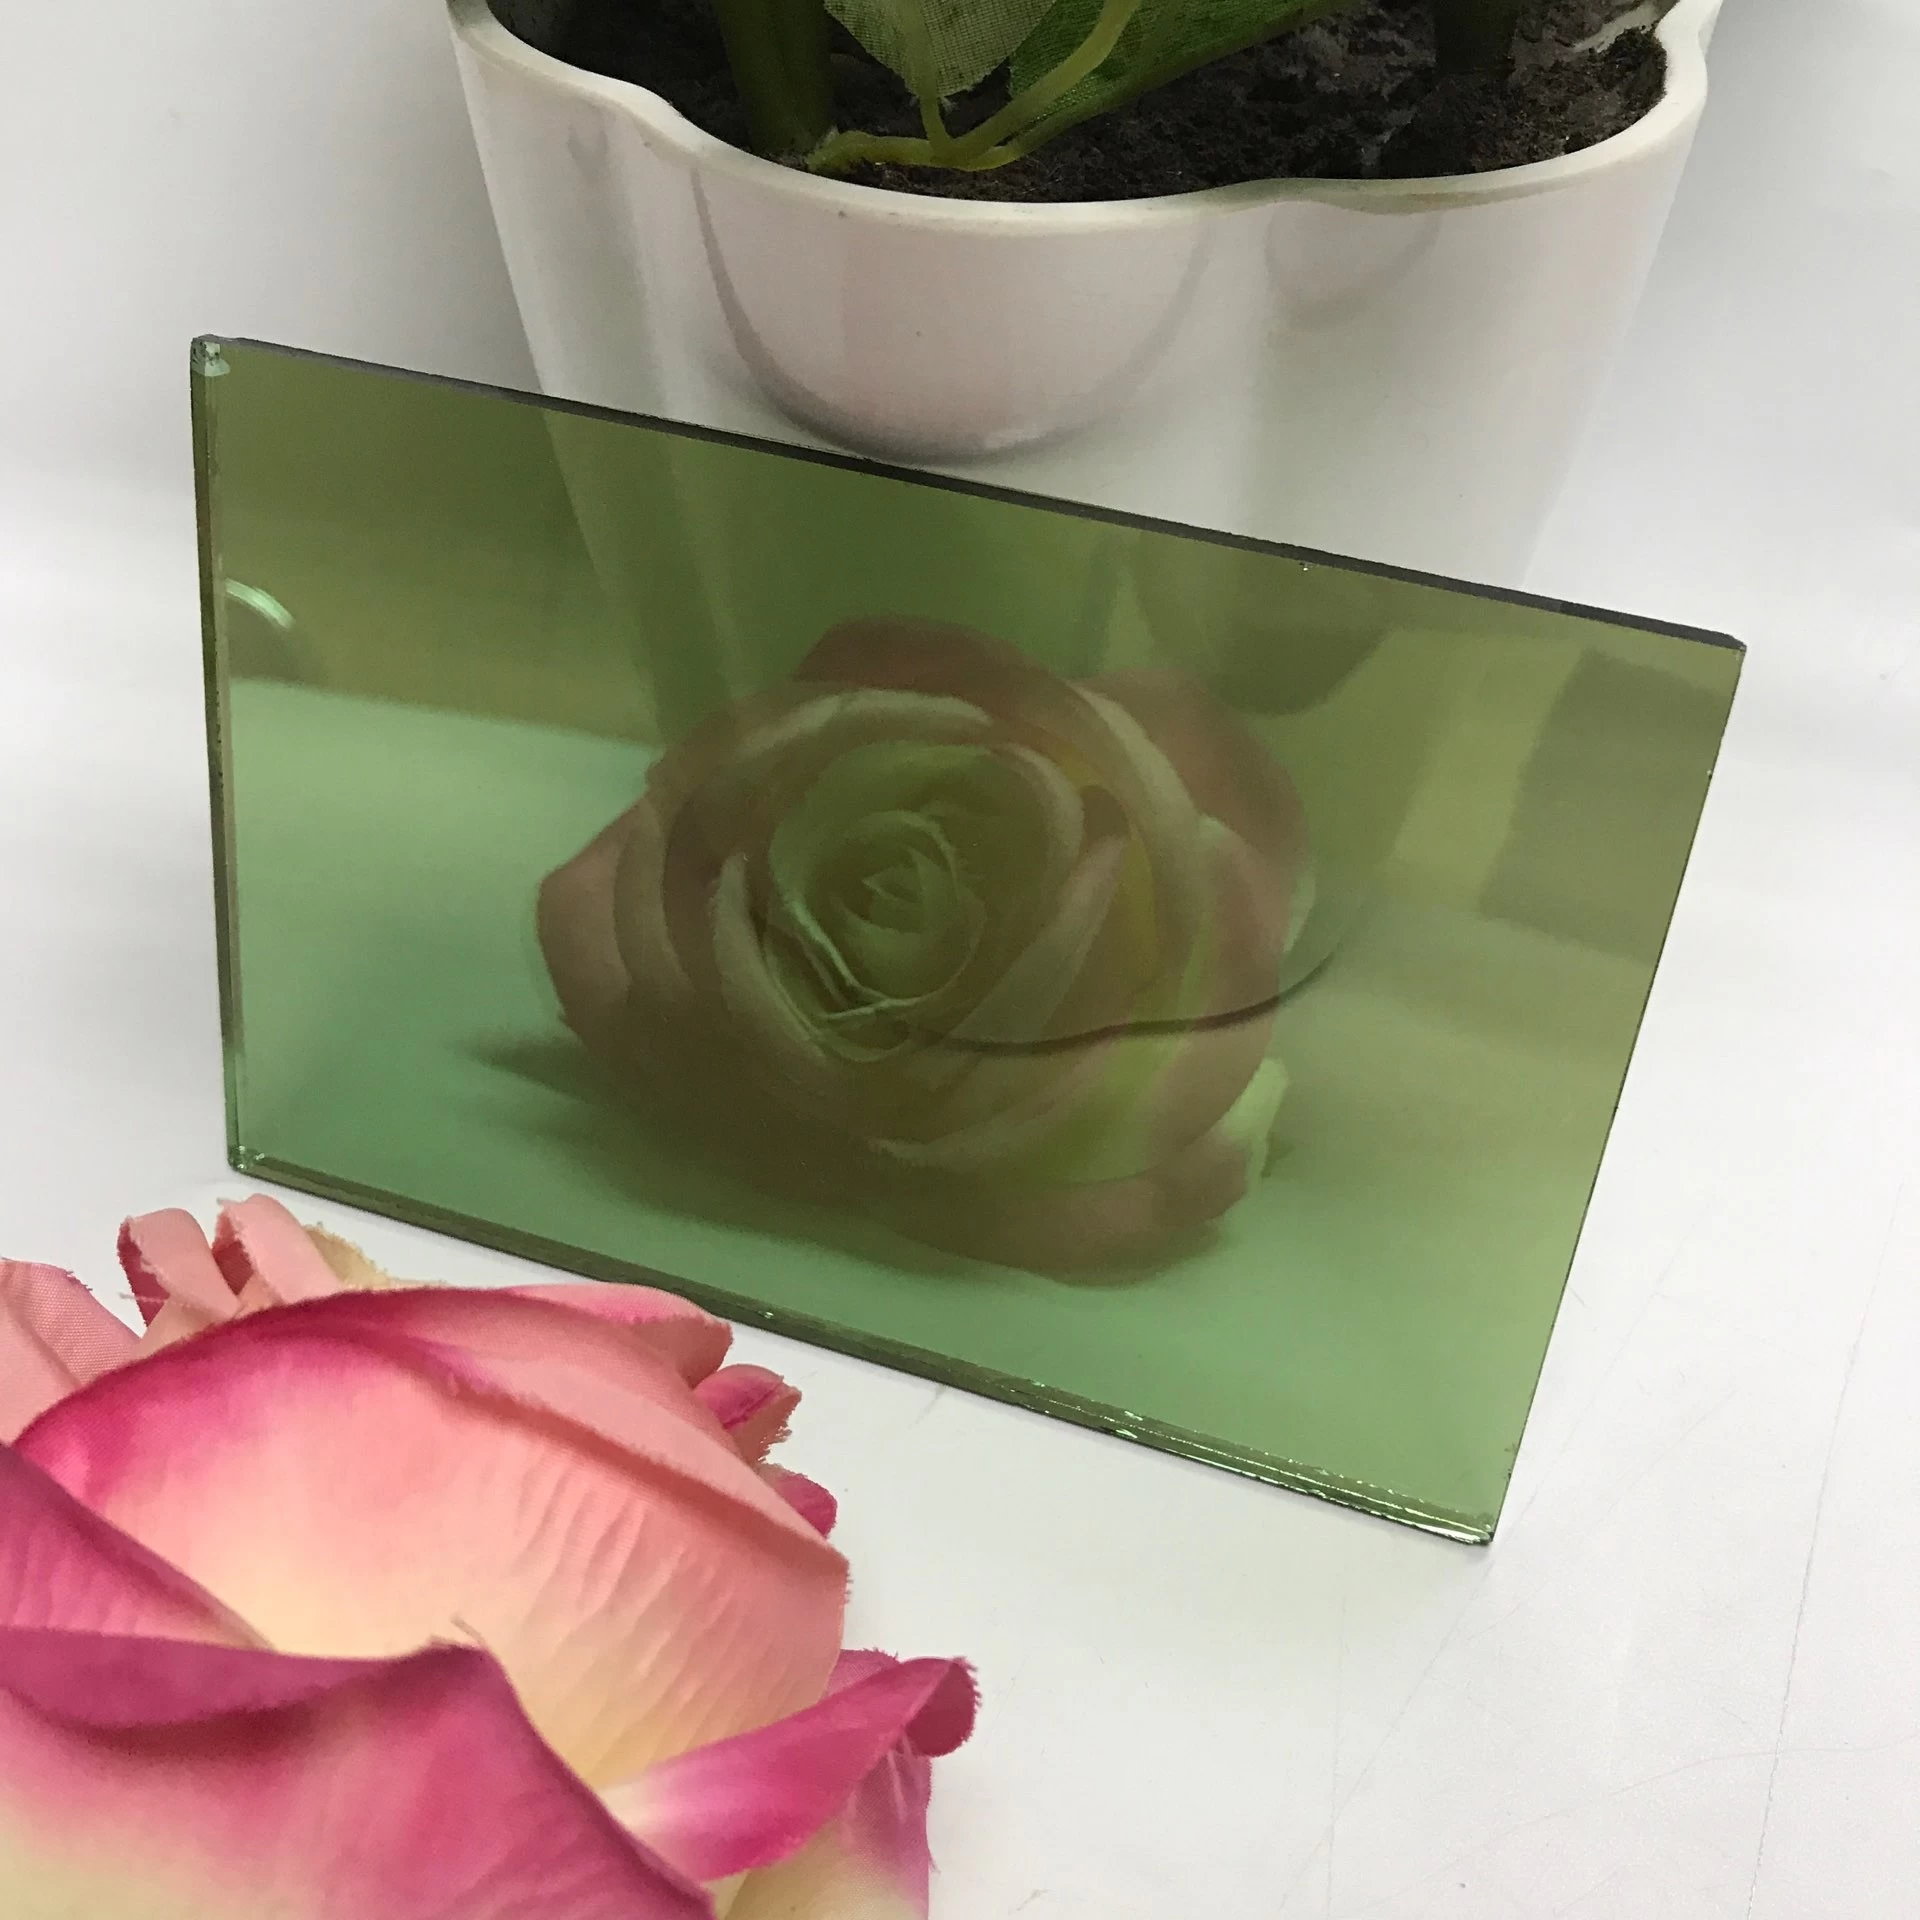 5.5mm französisches grünes reflektierendes Glas, reflektierendes Glas 5.5mm hellgrünes on-line-Überzuges, 5.5mm reflektierendes Glas der harten Beschichtung